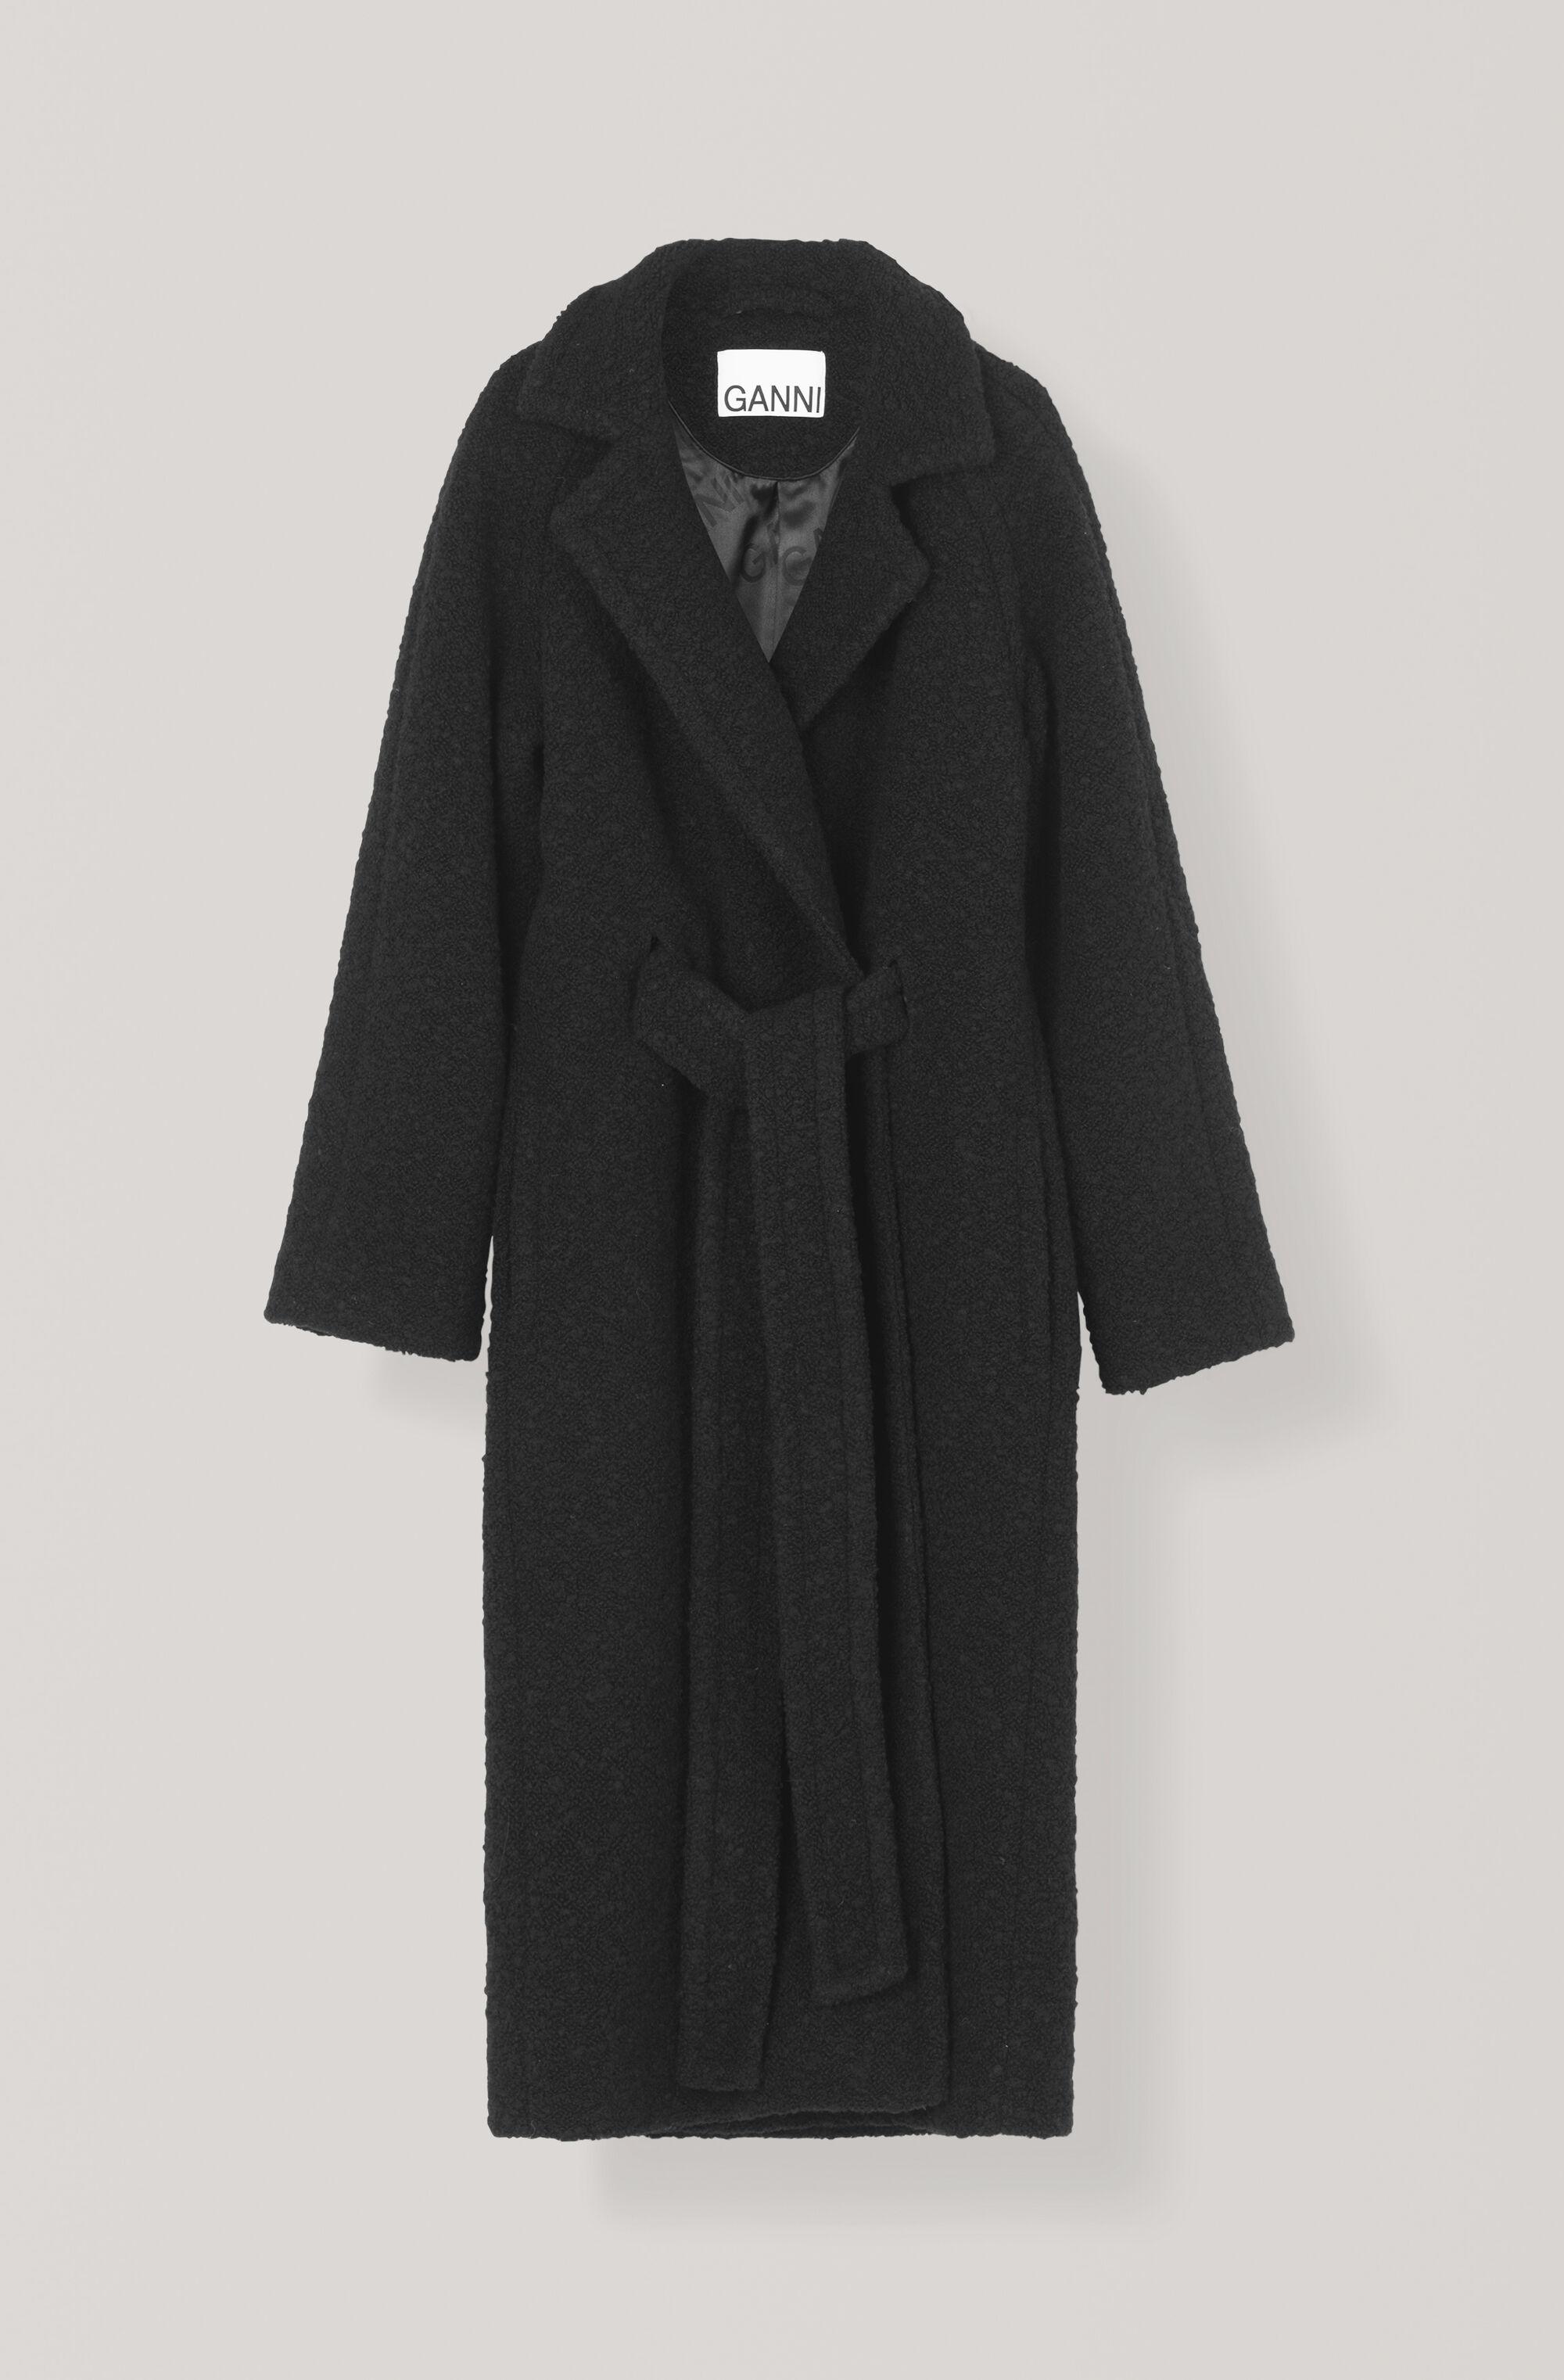 Ganni Boucle Wool Long Wrap Coat in Black - Lyst